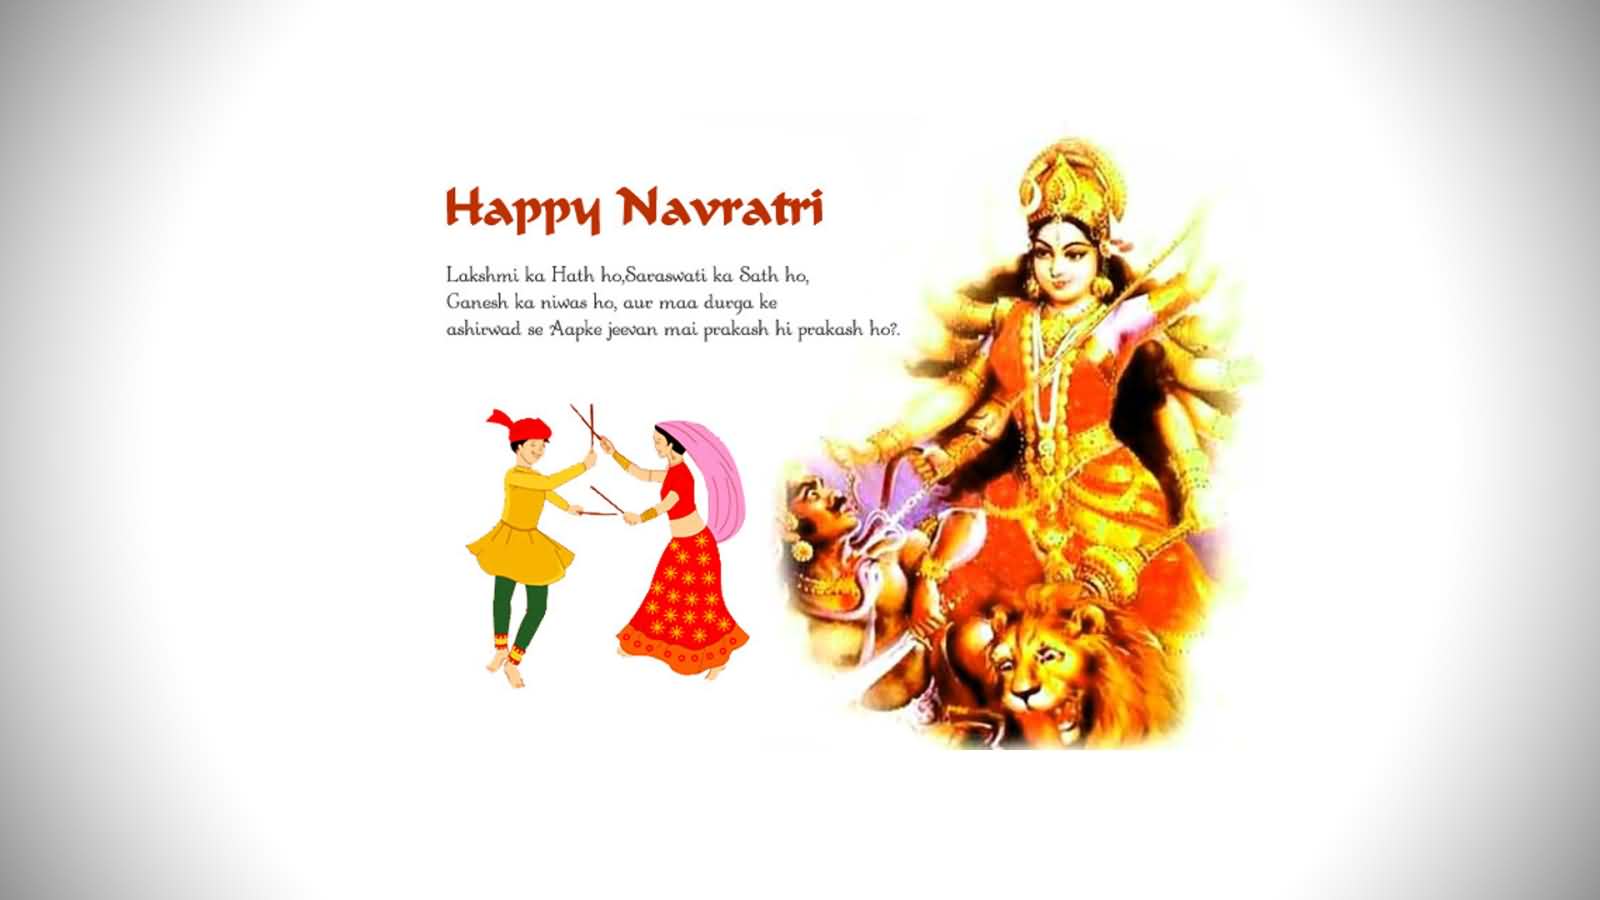 Happy Navratri hindi wishes picture